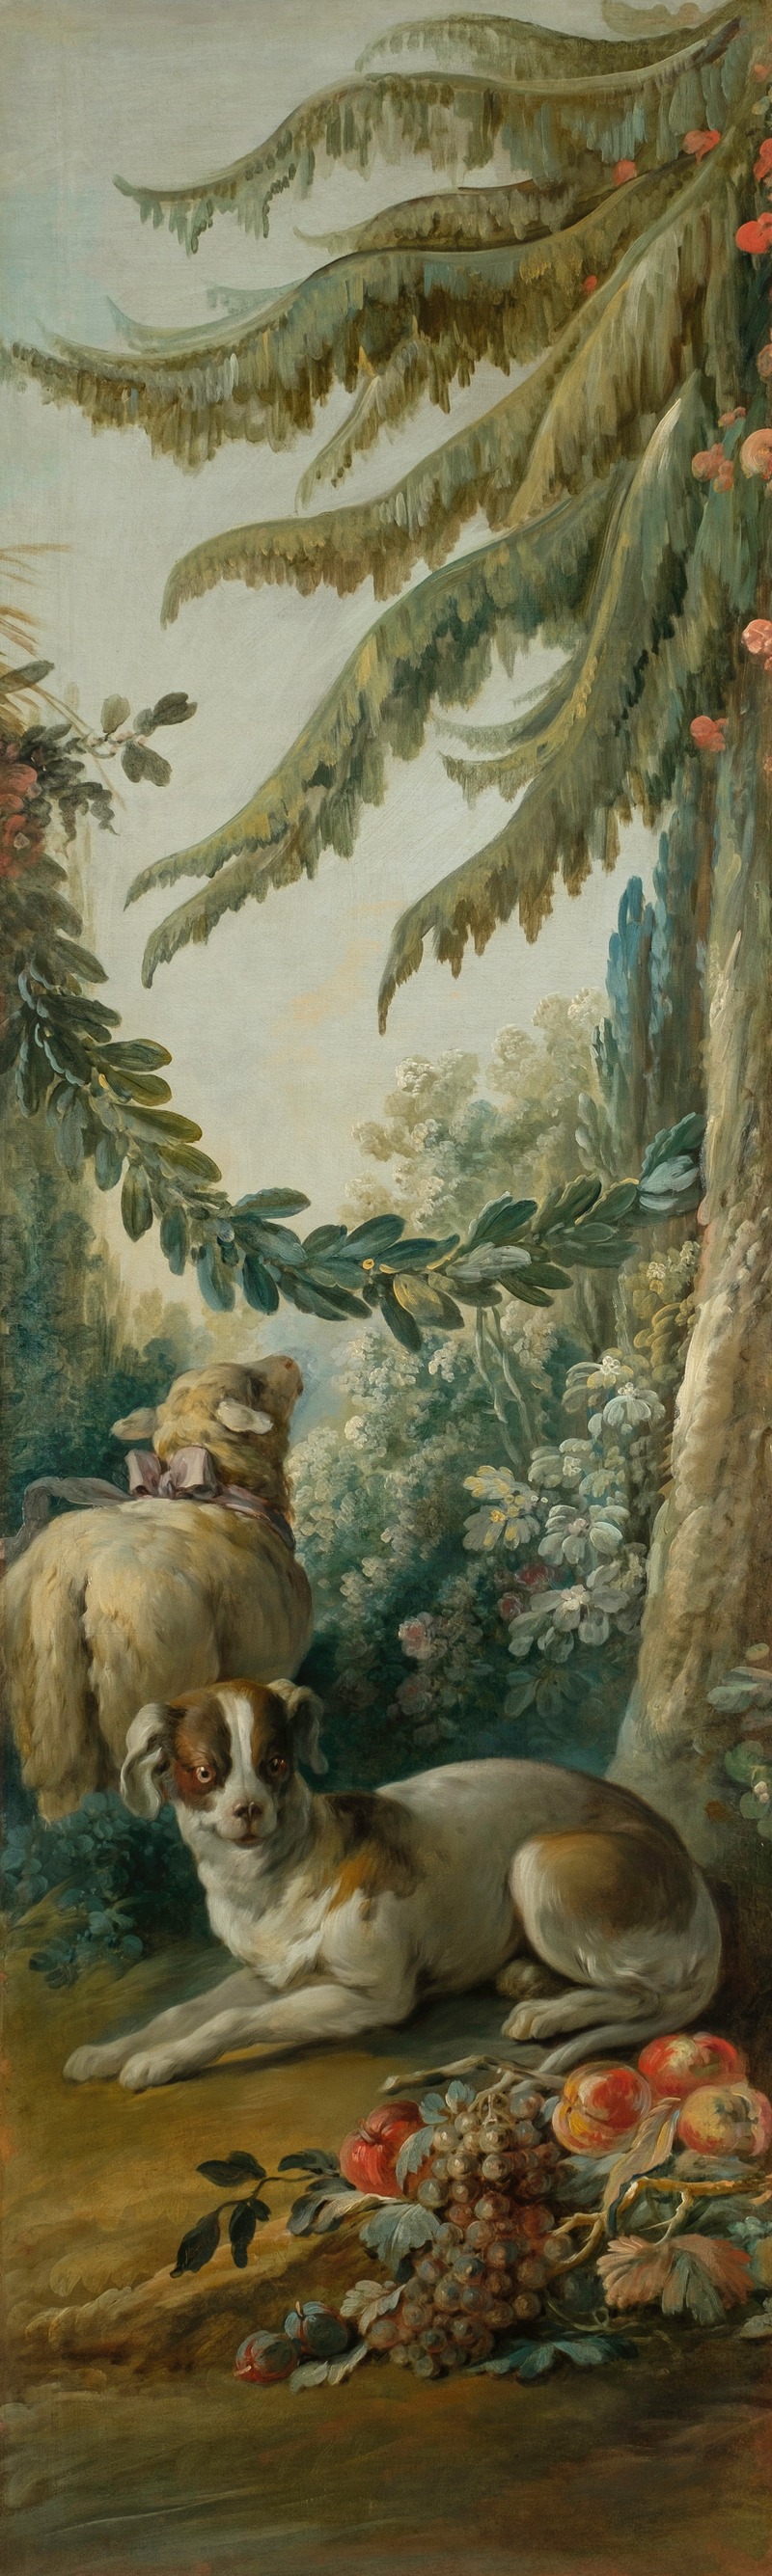 Jean-Baptiste Huet - Chien et mouton dans un paysage